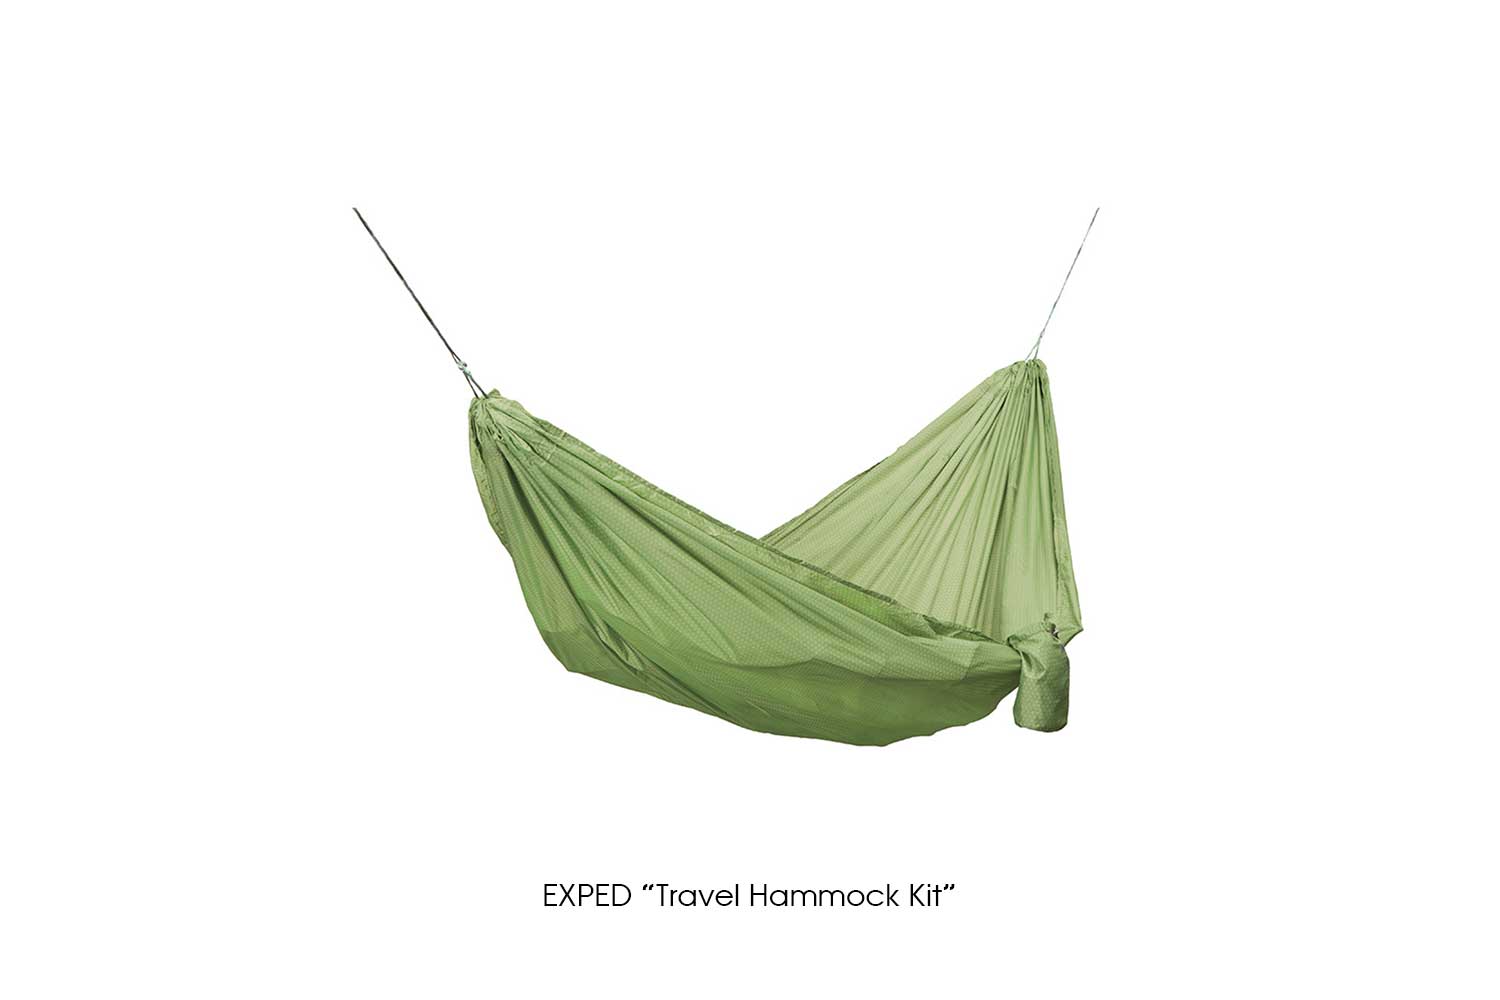 EXPED "Travel Hammock Kit"